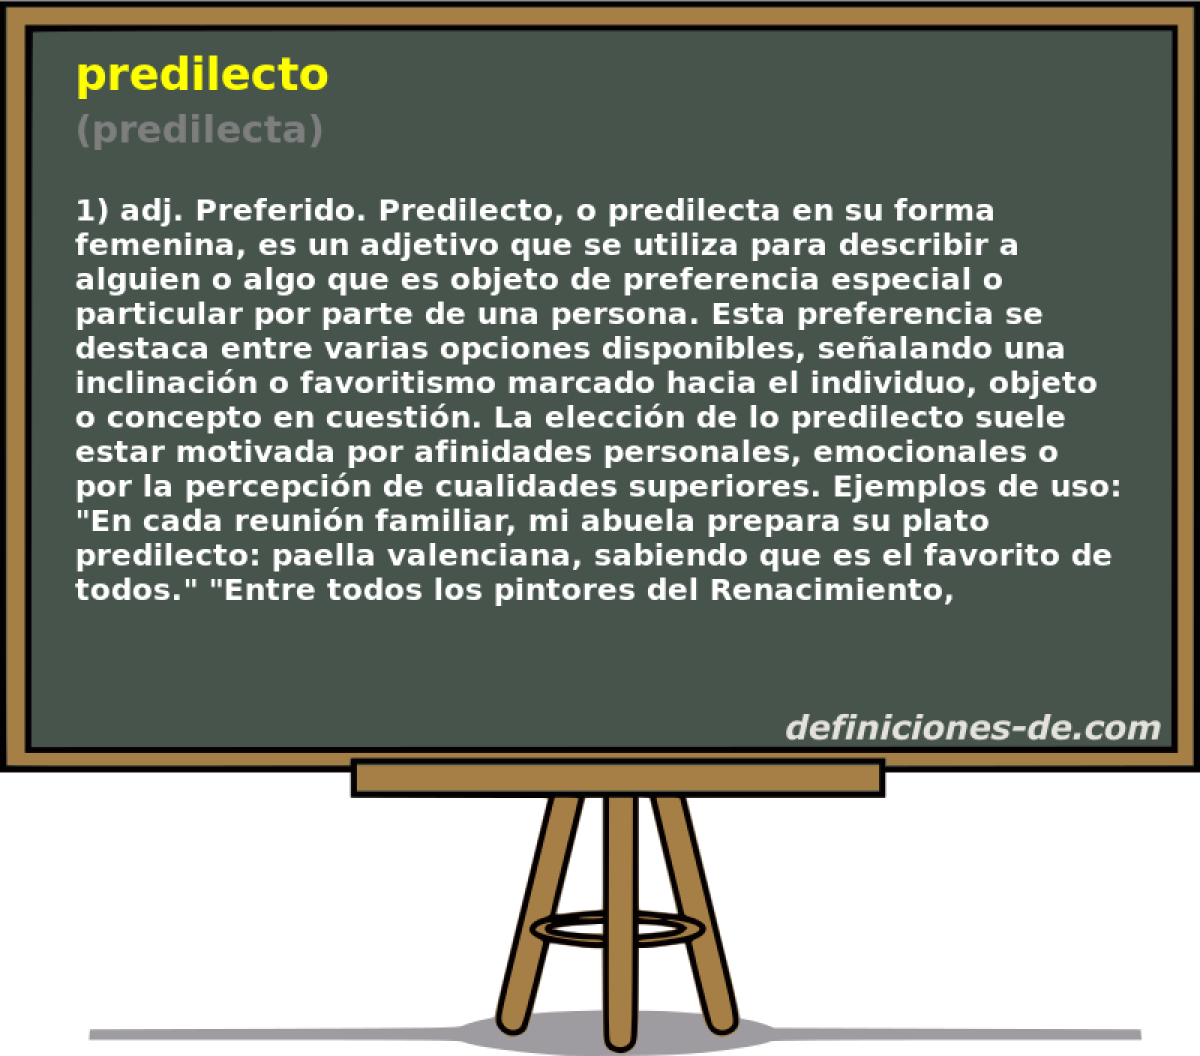 predilecto (predilecta)